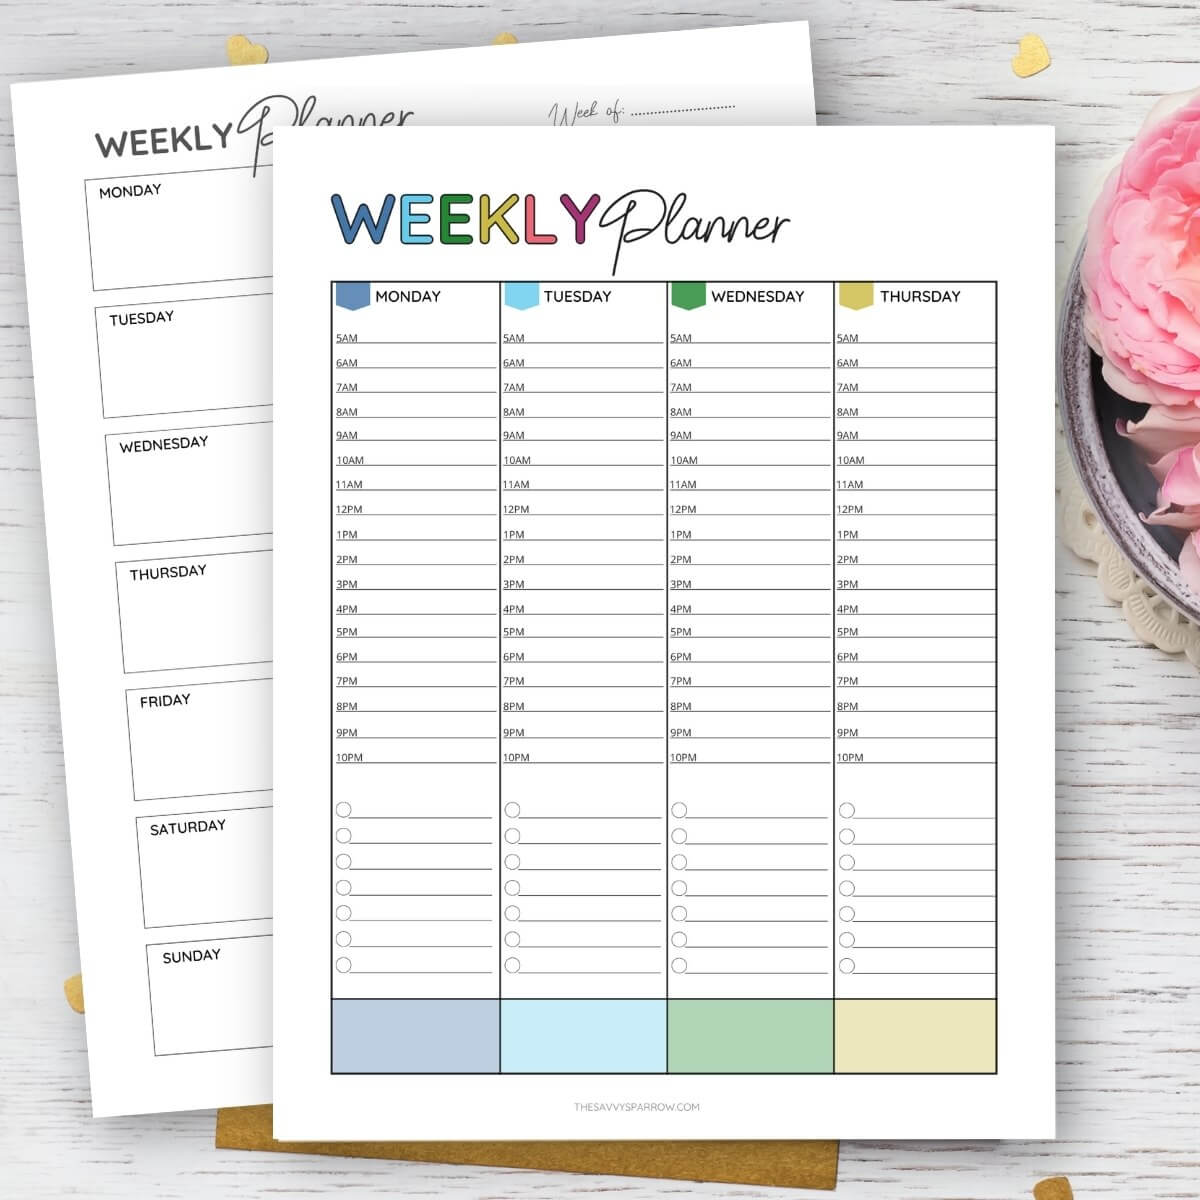 Printable Weekly Planner Weekly Planner Printable Weekly Planner